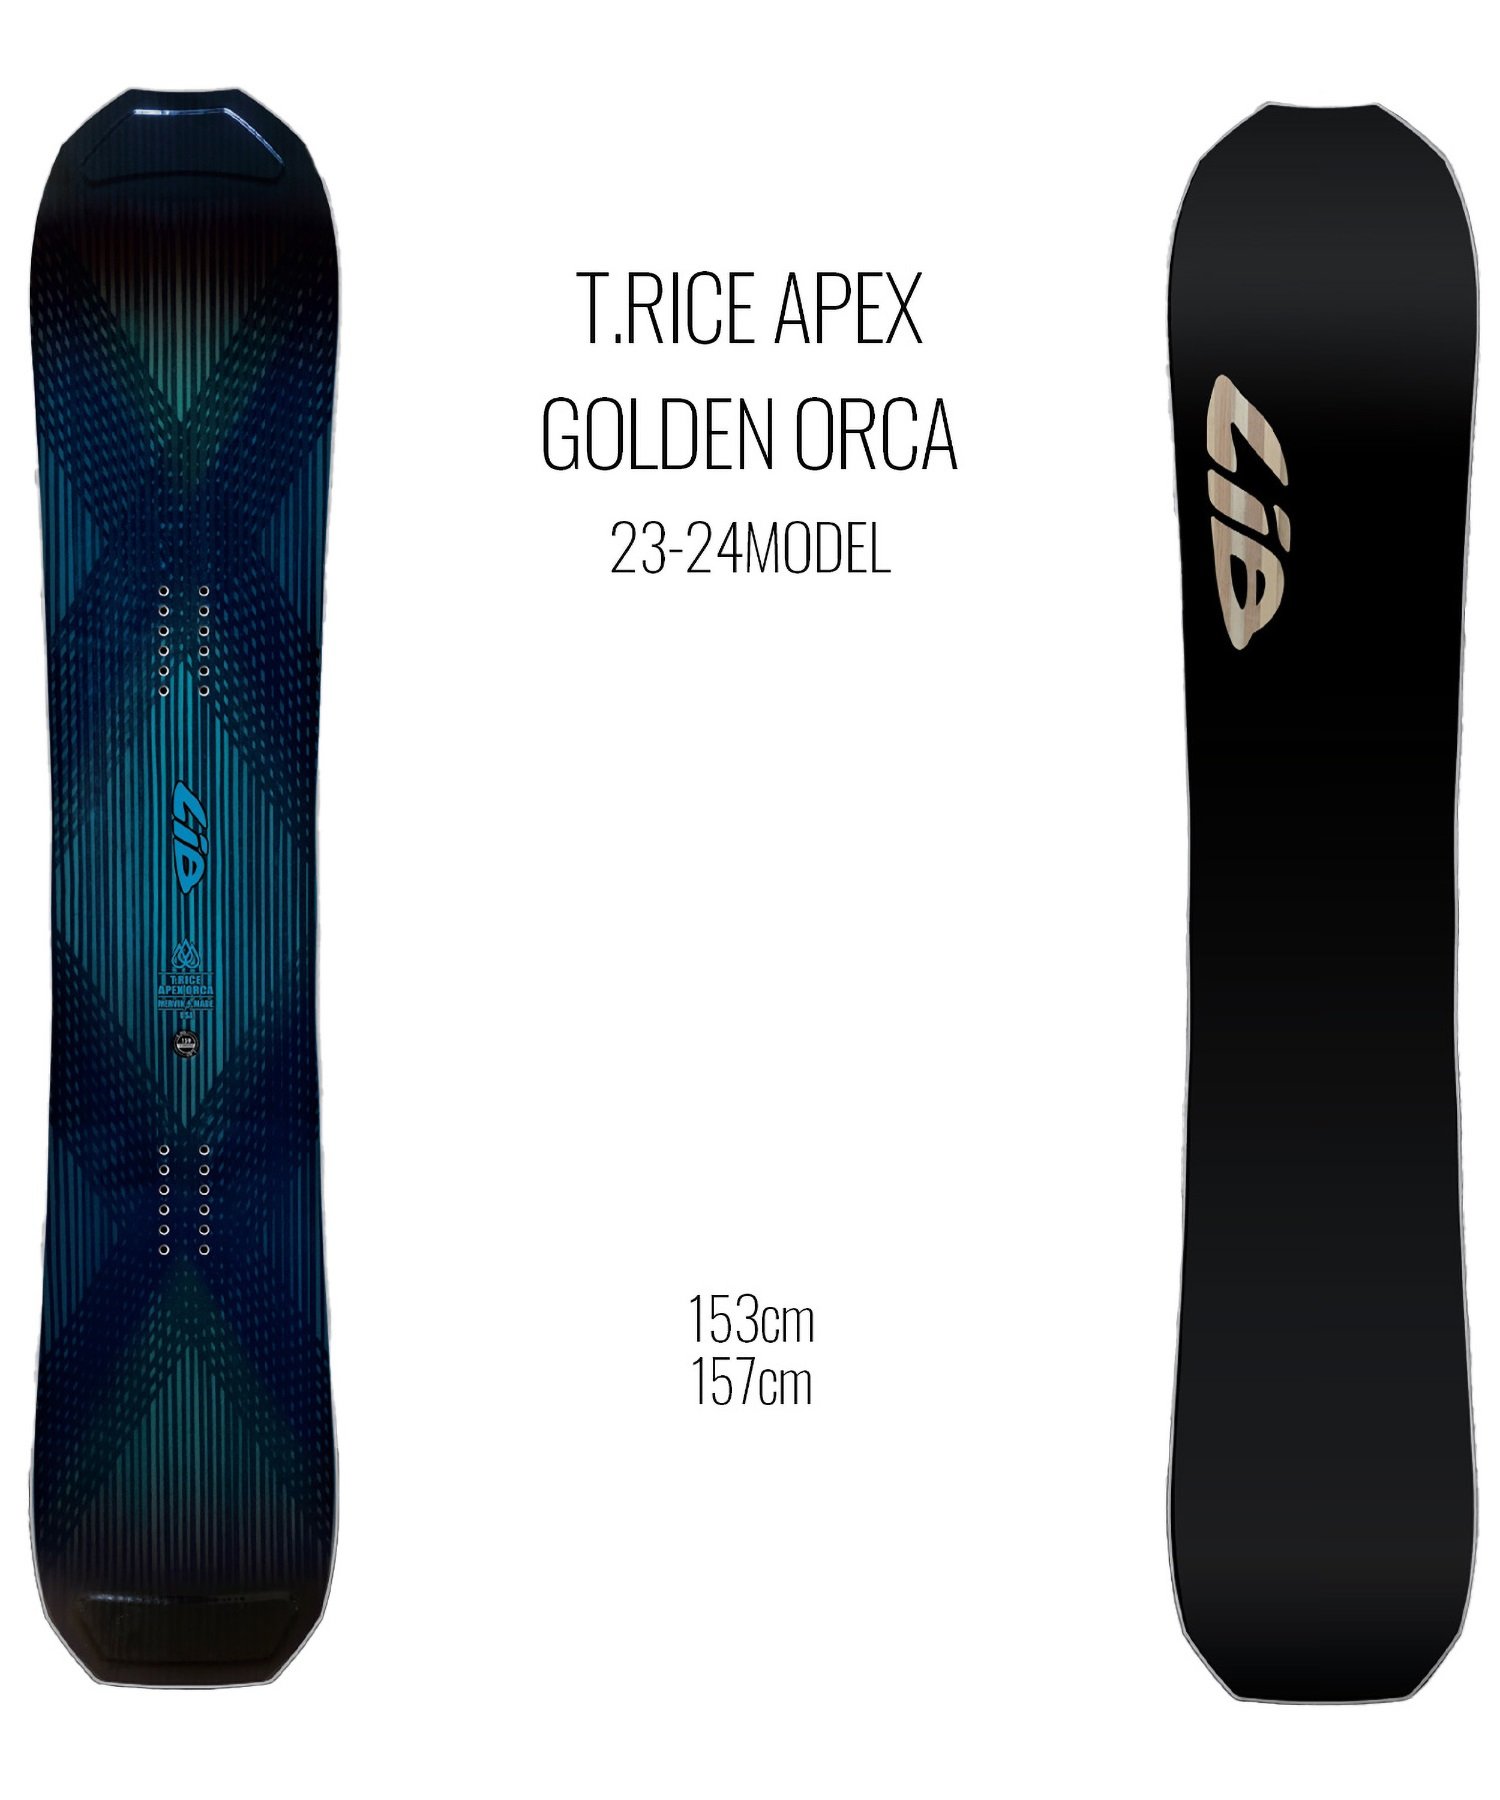 スノーボード 板 メンズ LIBTECH リブテック T-RICE APEX GOLDEN ORCA